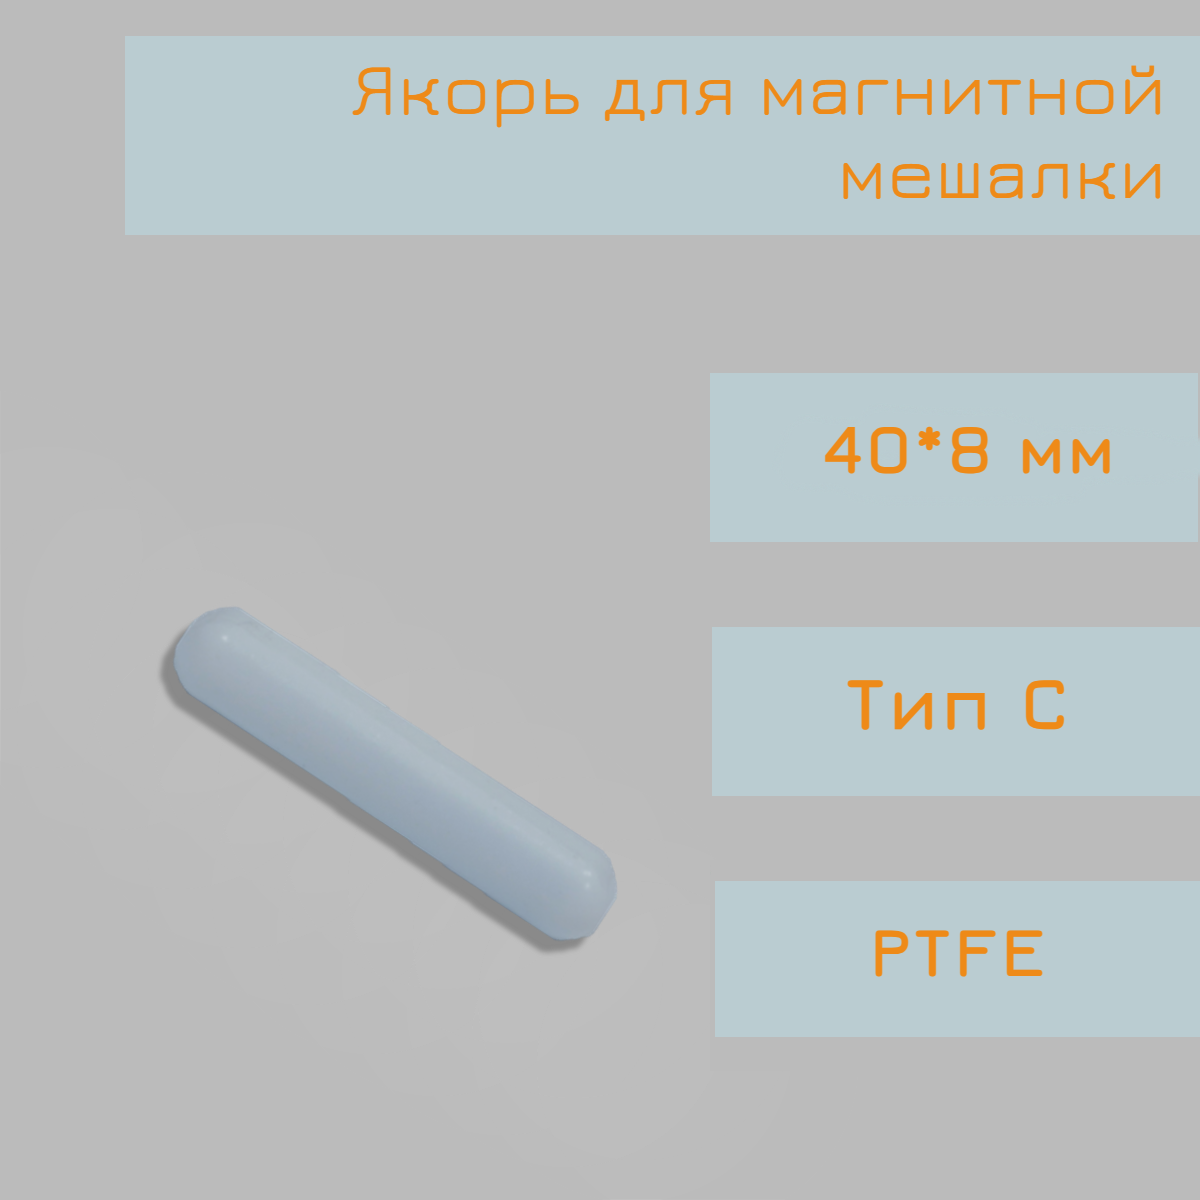 Якорь для магнитной мешалки 50*85 мм тип C гладкий PTFE птфэ